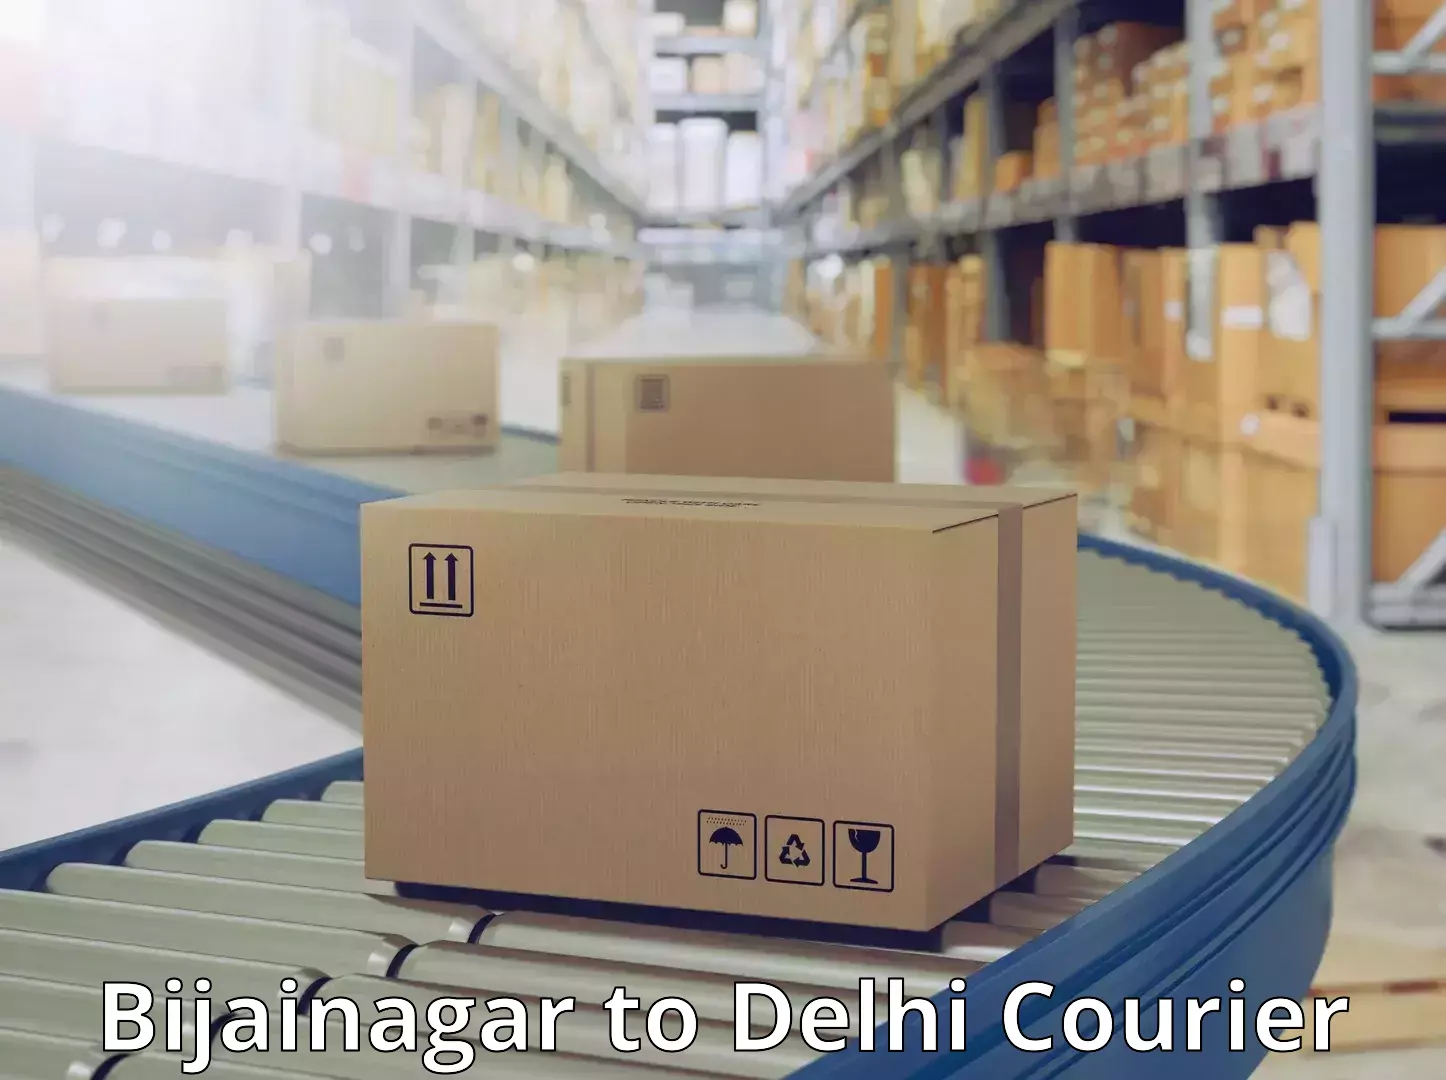 24/7 courier service Bijainagar to Delhi